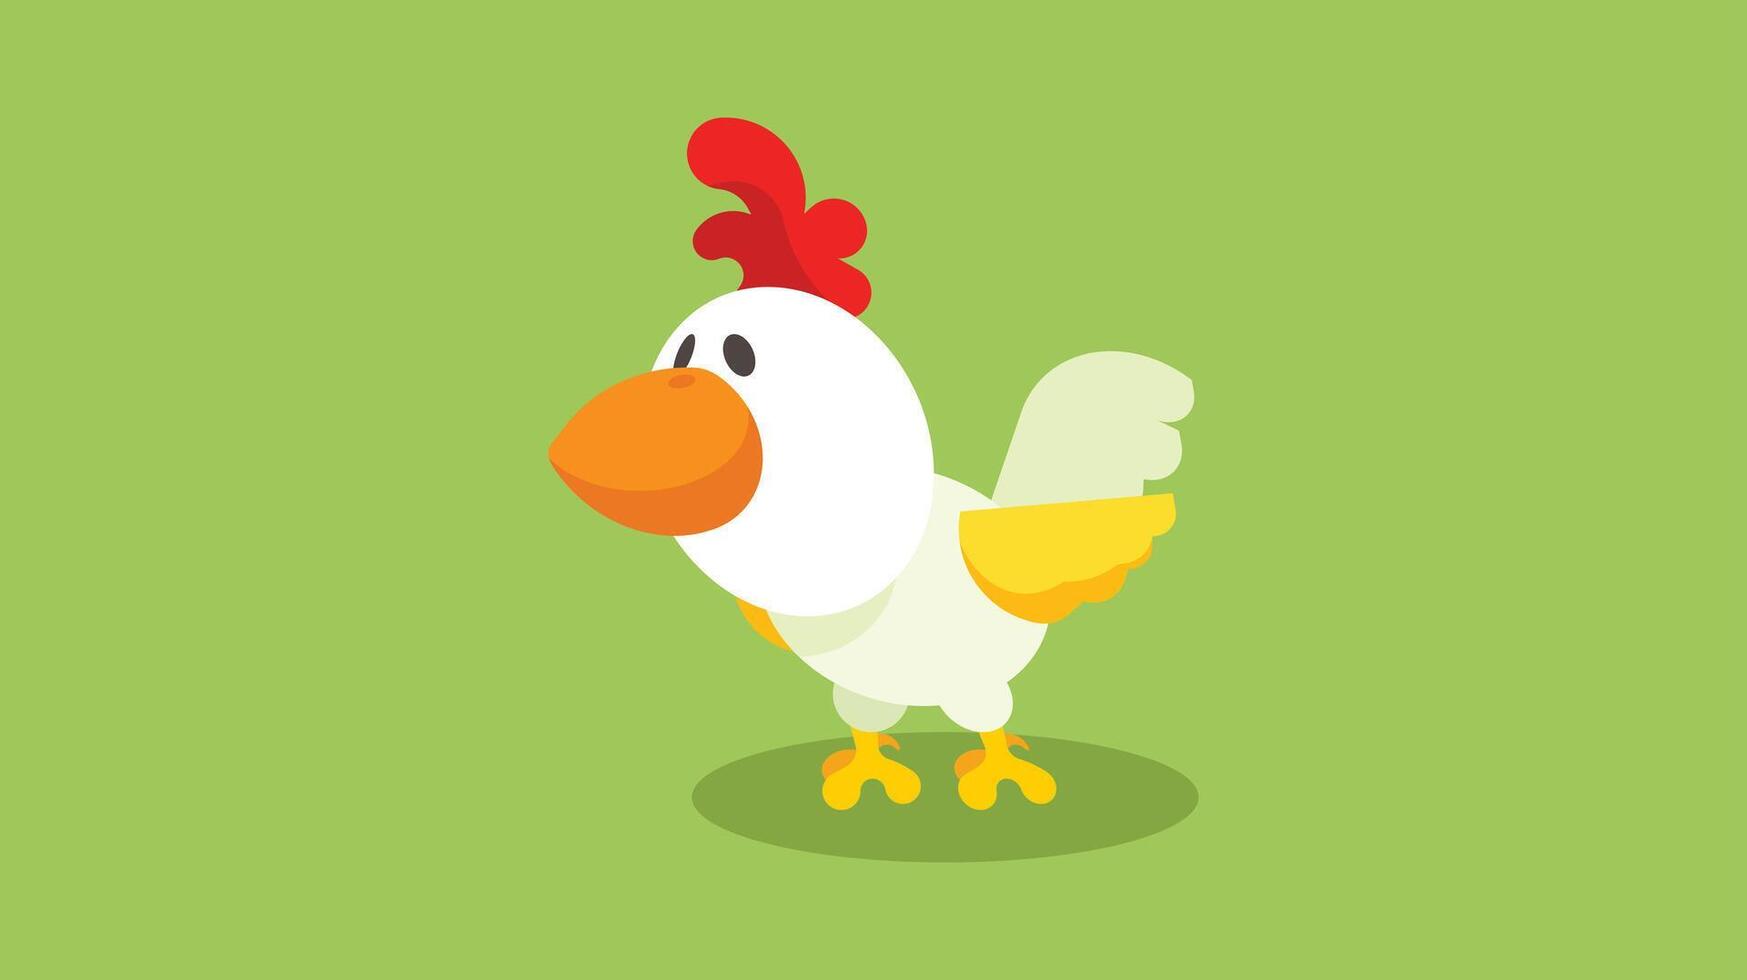 chicken bird smiling character vector illustration